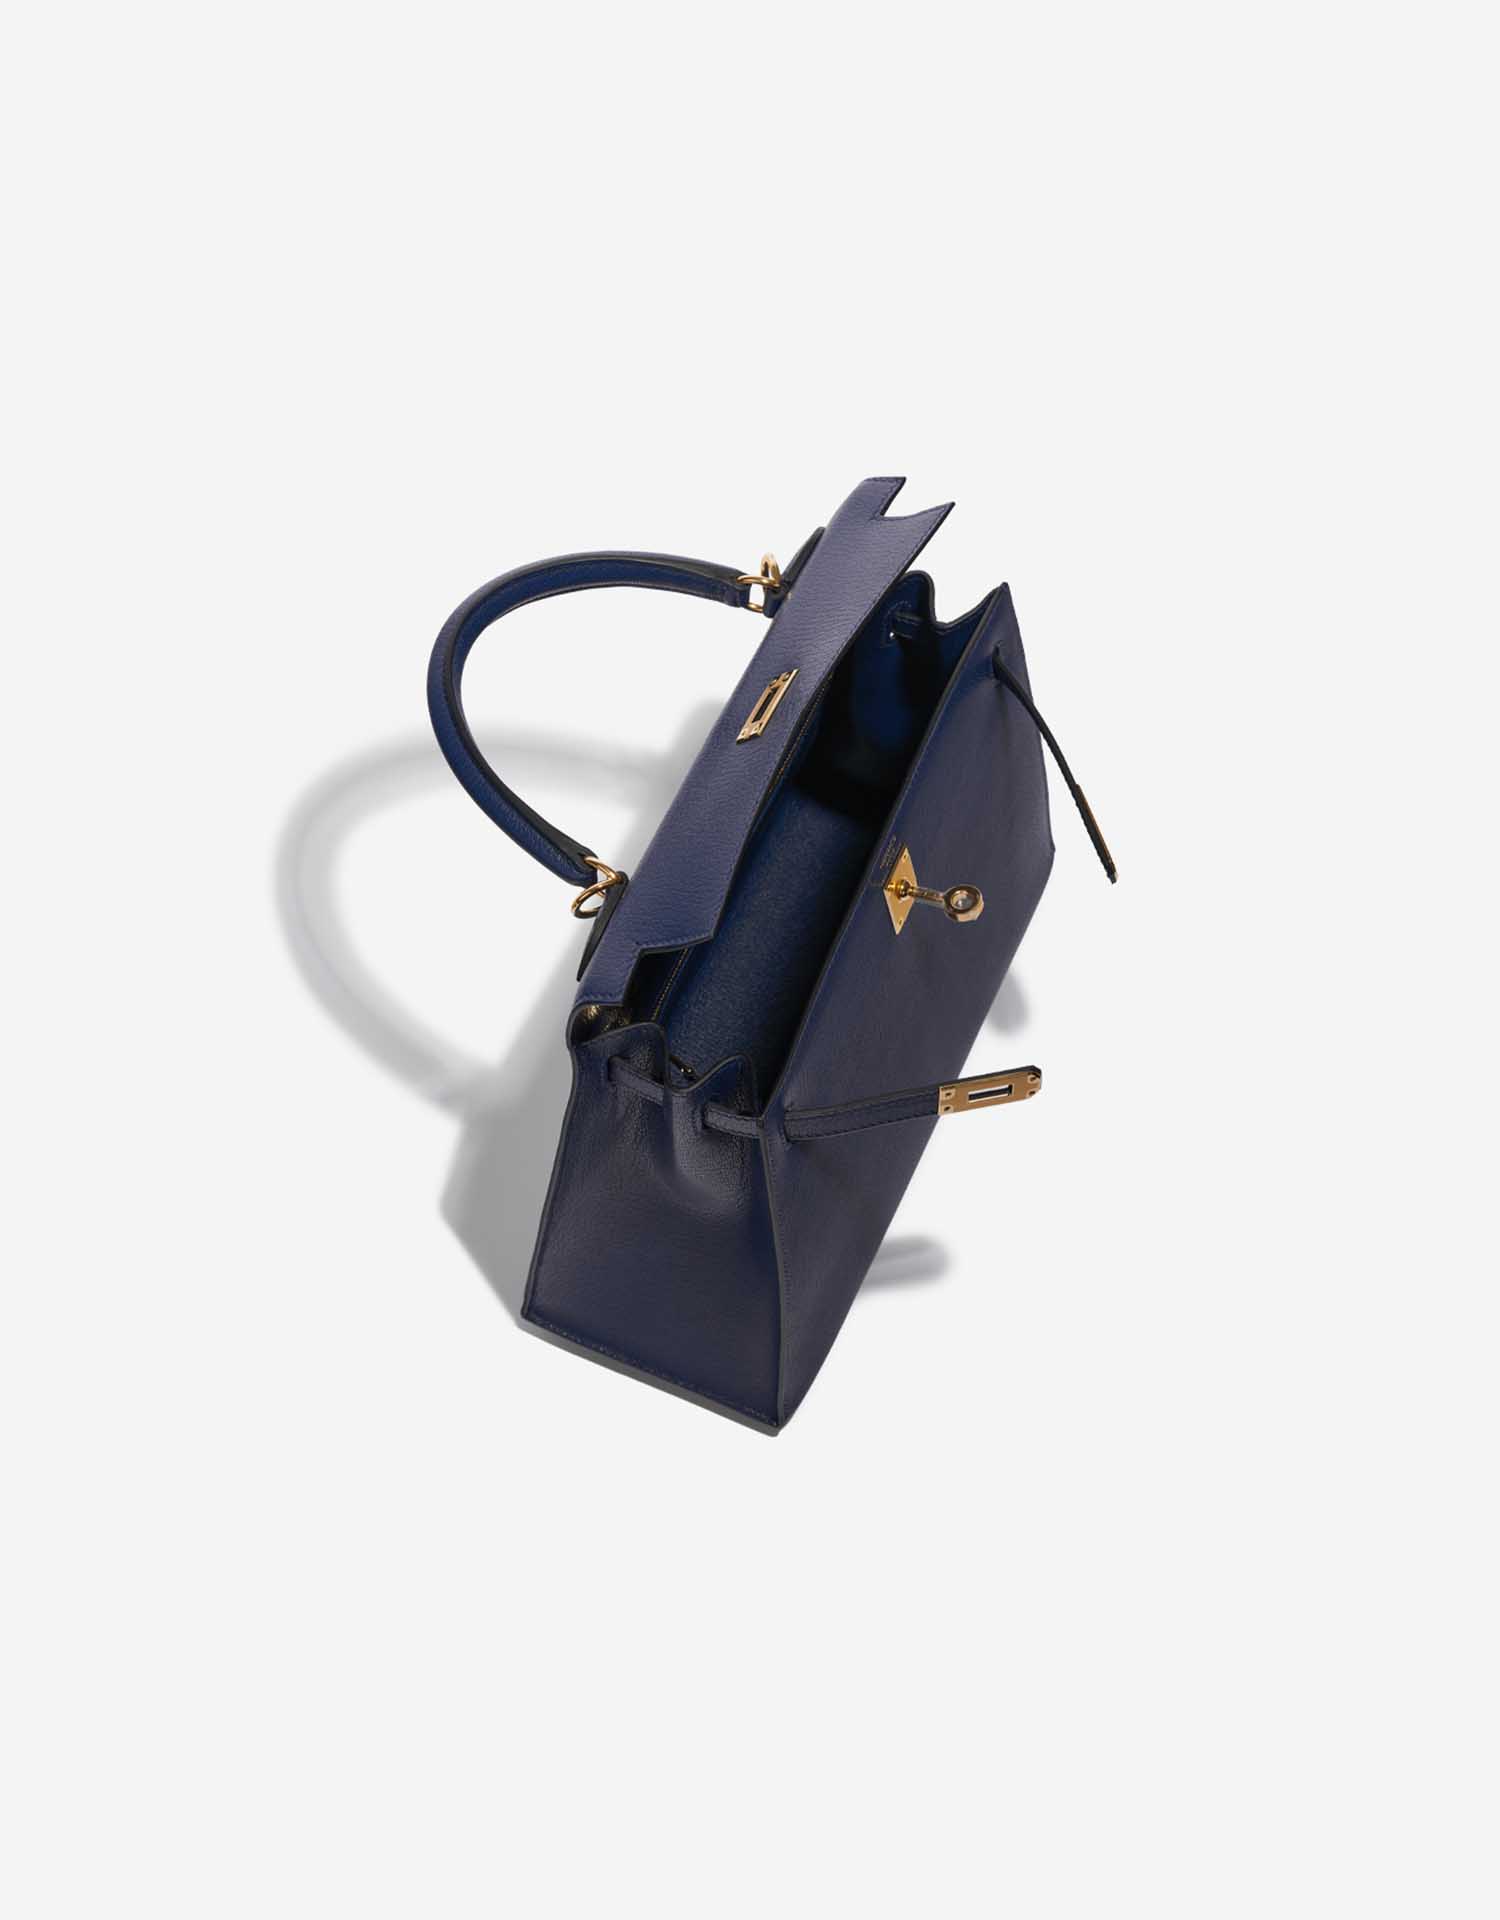 Gebrauchte Hermès Tasche Kelly 25 Chèvre Chamkila Blue Saphire Blue Inside | Verkaufen Sie Ihre Designertasche auf Saclab.com